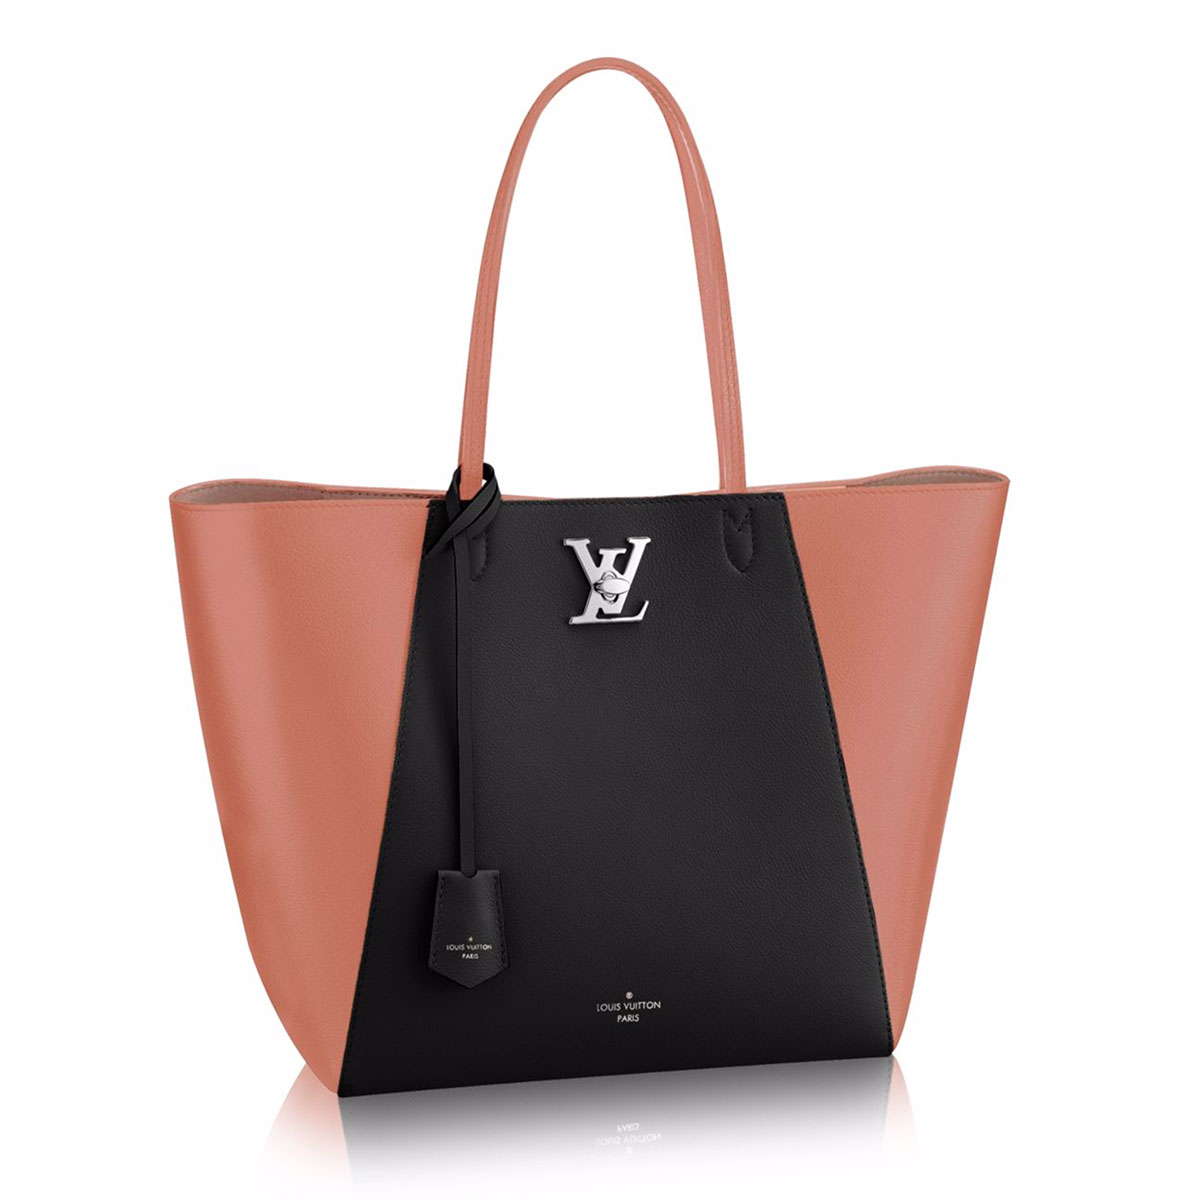 PurseBlog: A New Louis Vuitton Lockme Bag